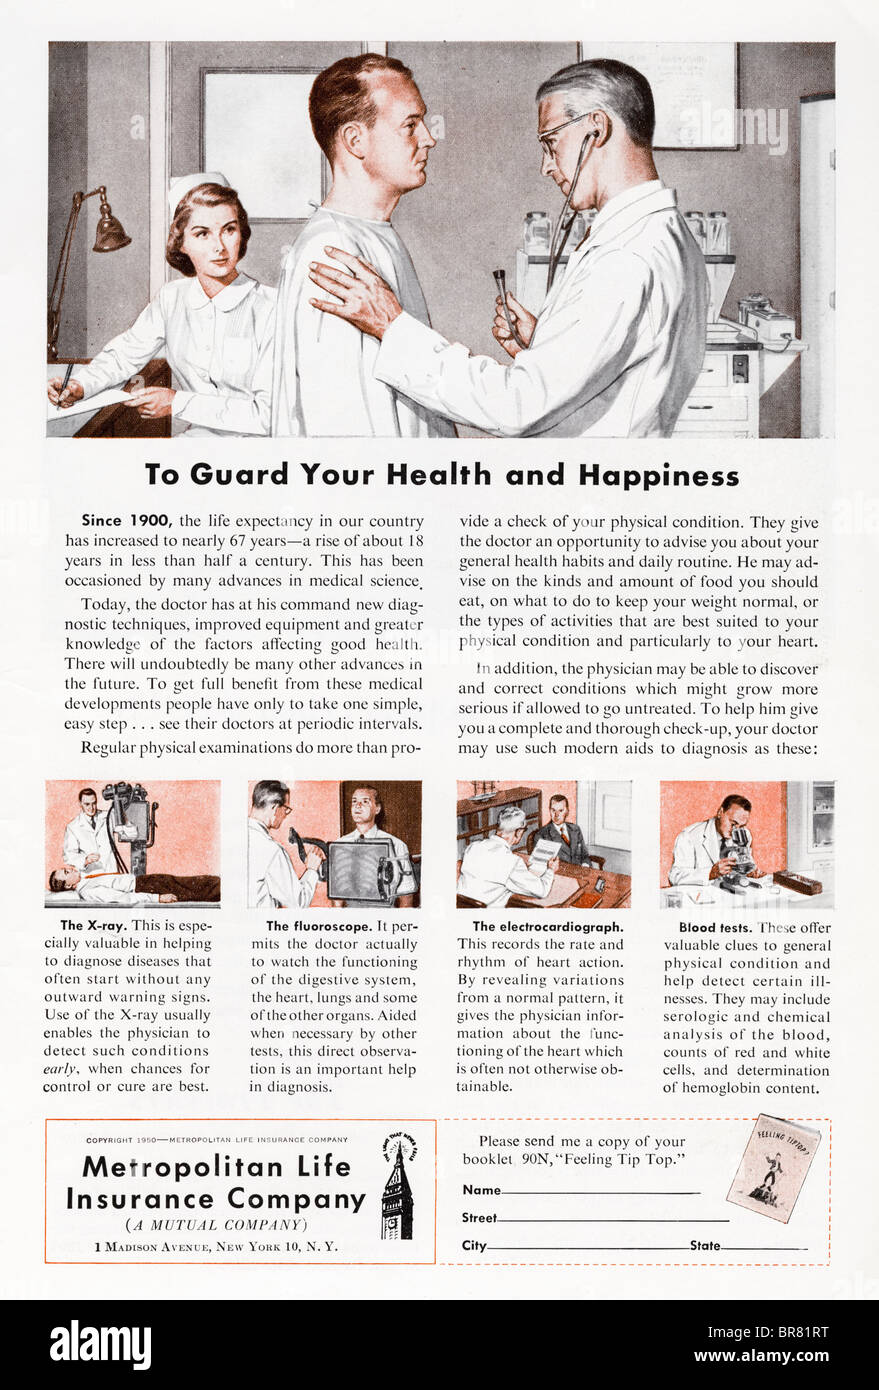 Rivista americana annuncio pubblicitario per la vita metropolitana società di assicurazioni circa 1950 Foto Stock